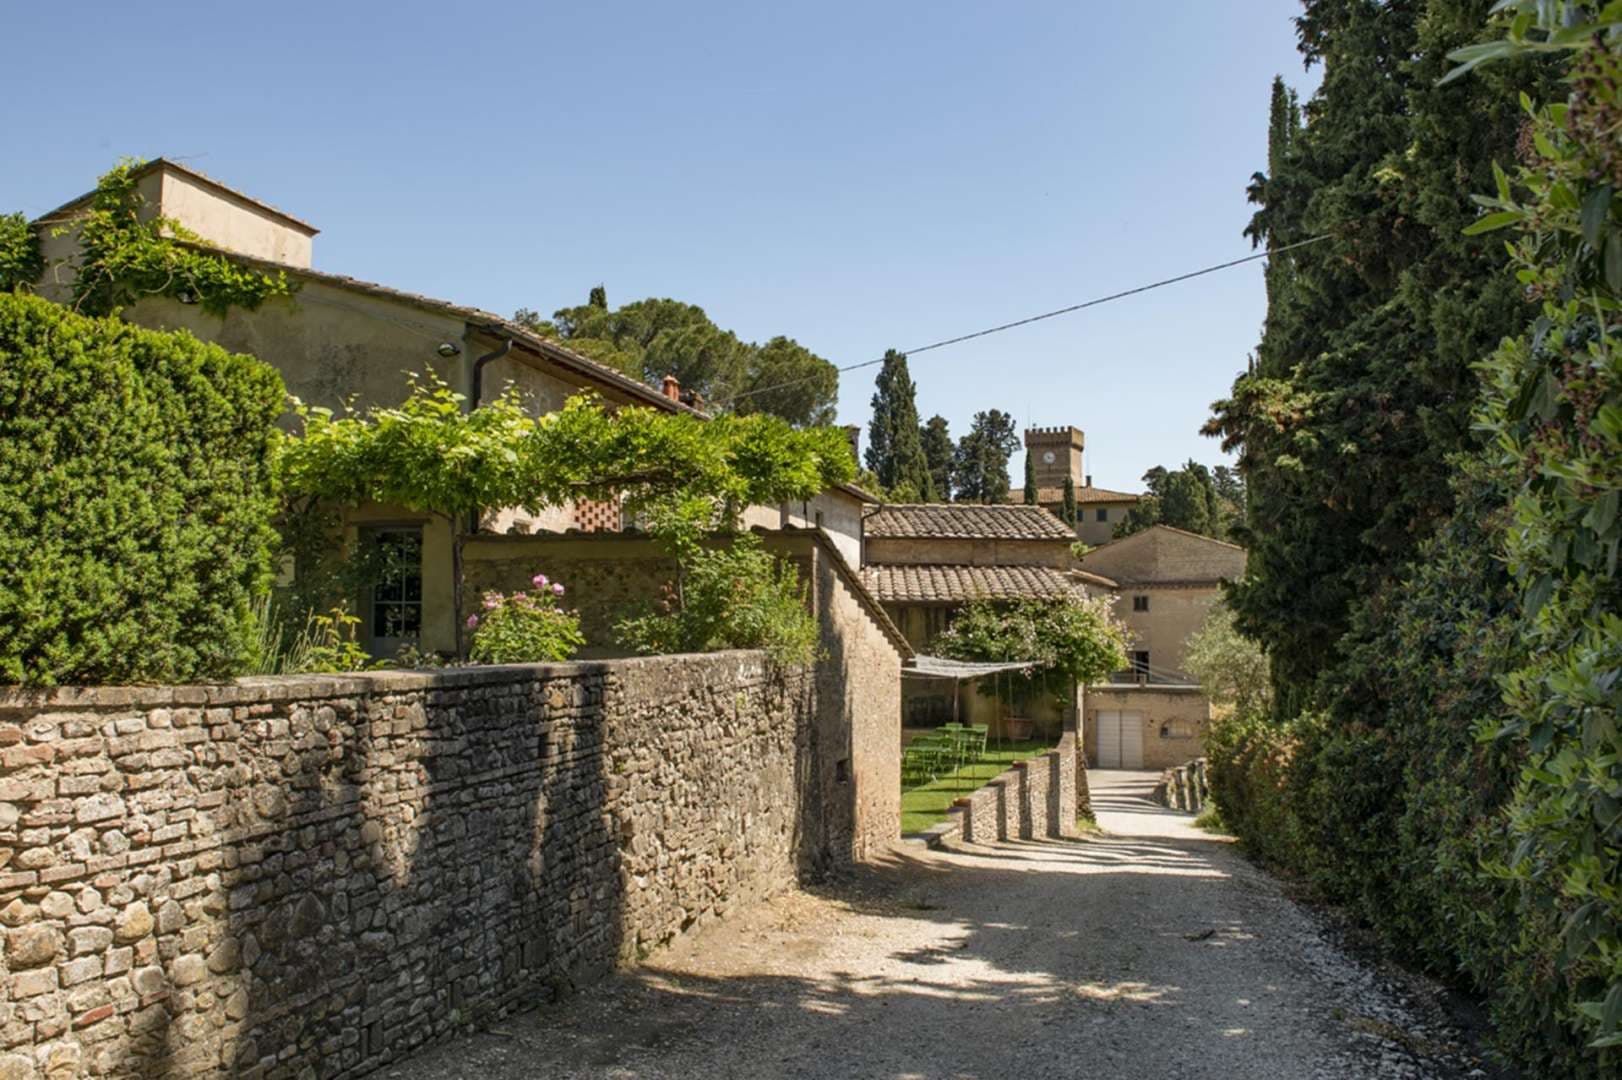 5 Bedroom Villa For Sale Castello Fiorentino Lp05003 2f12b31f38daba00.jpg